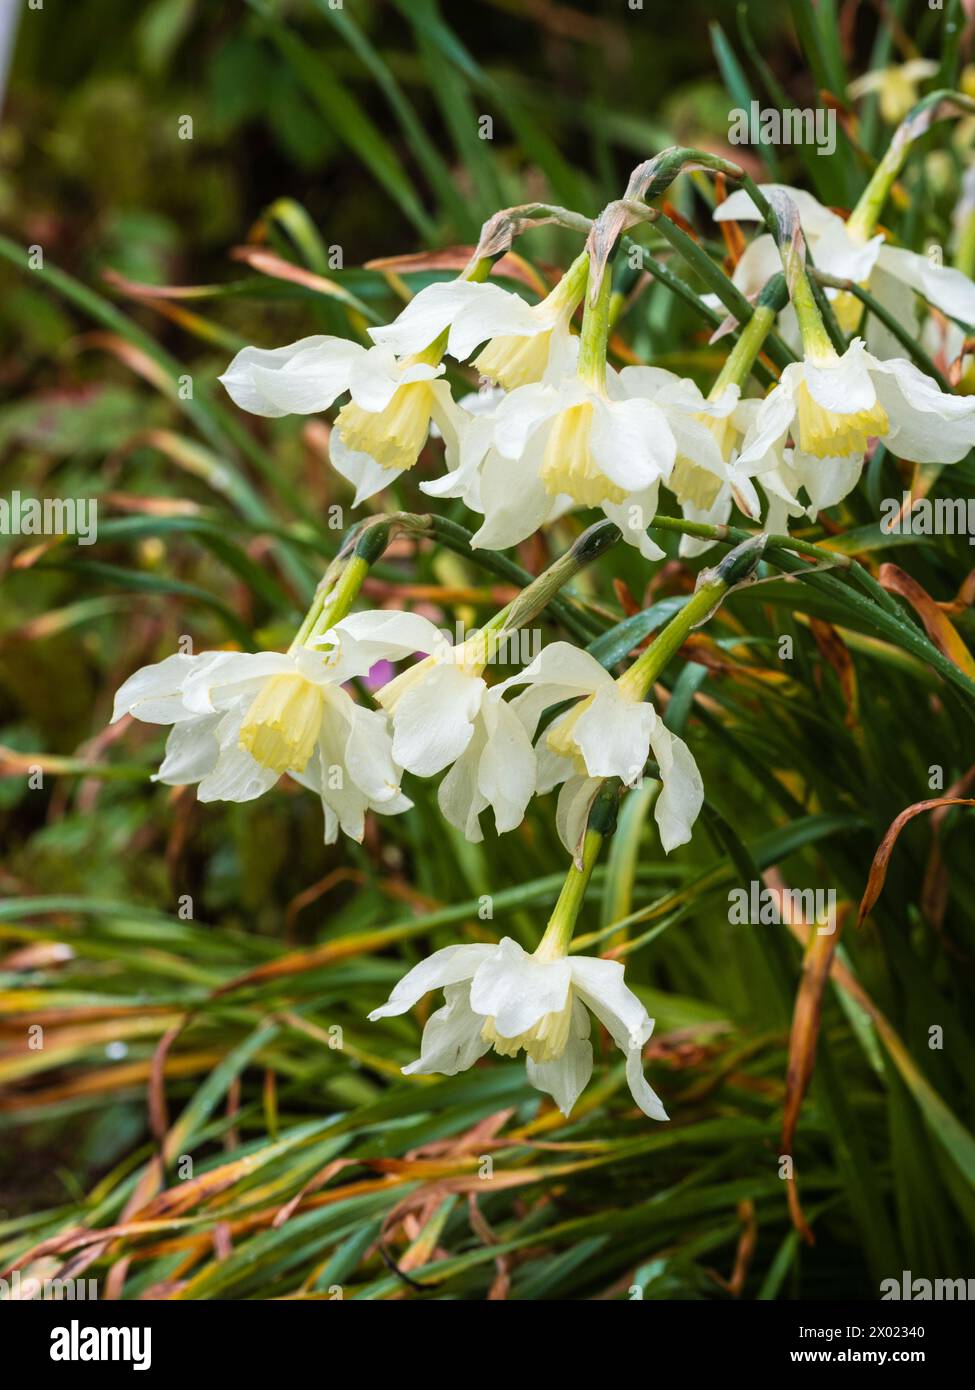 Petali bianchi e corolla giallo pallido della varietà di narcisi Narcissus "Mrs Langtry" fiorita all'inizio della primavera Foto Stock